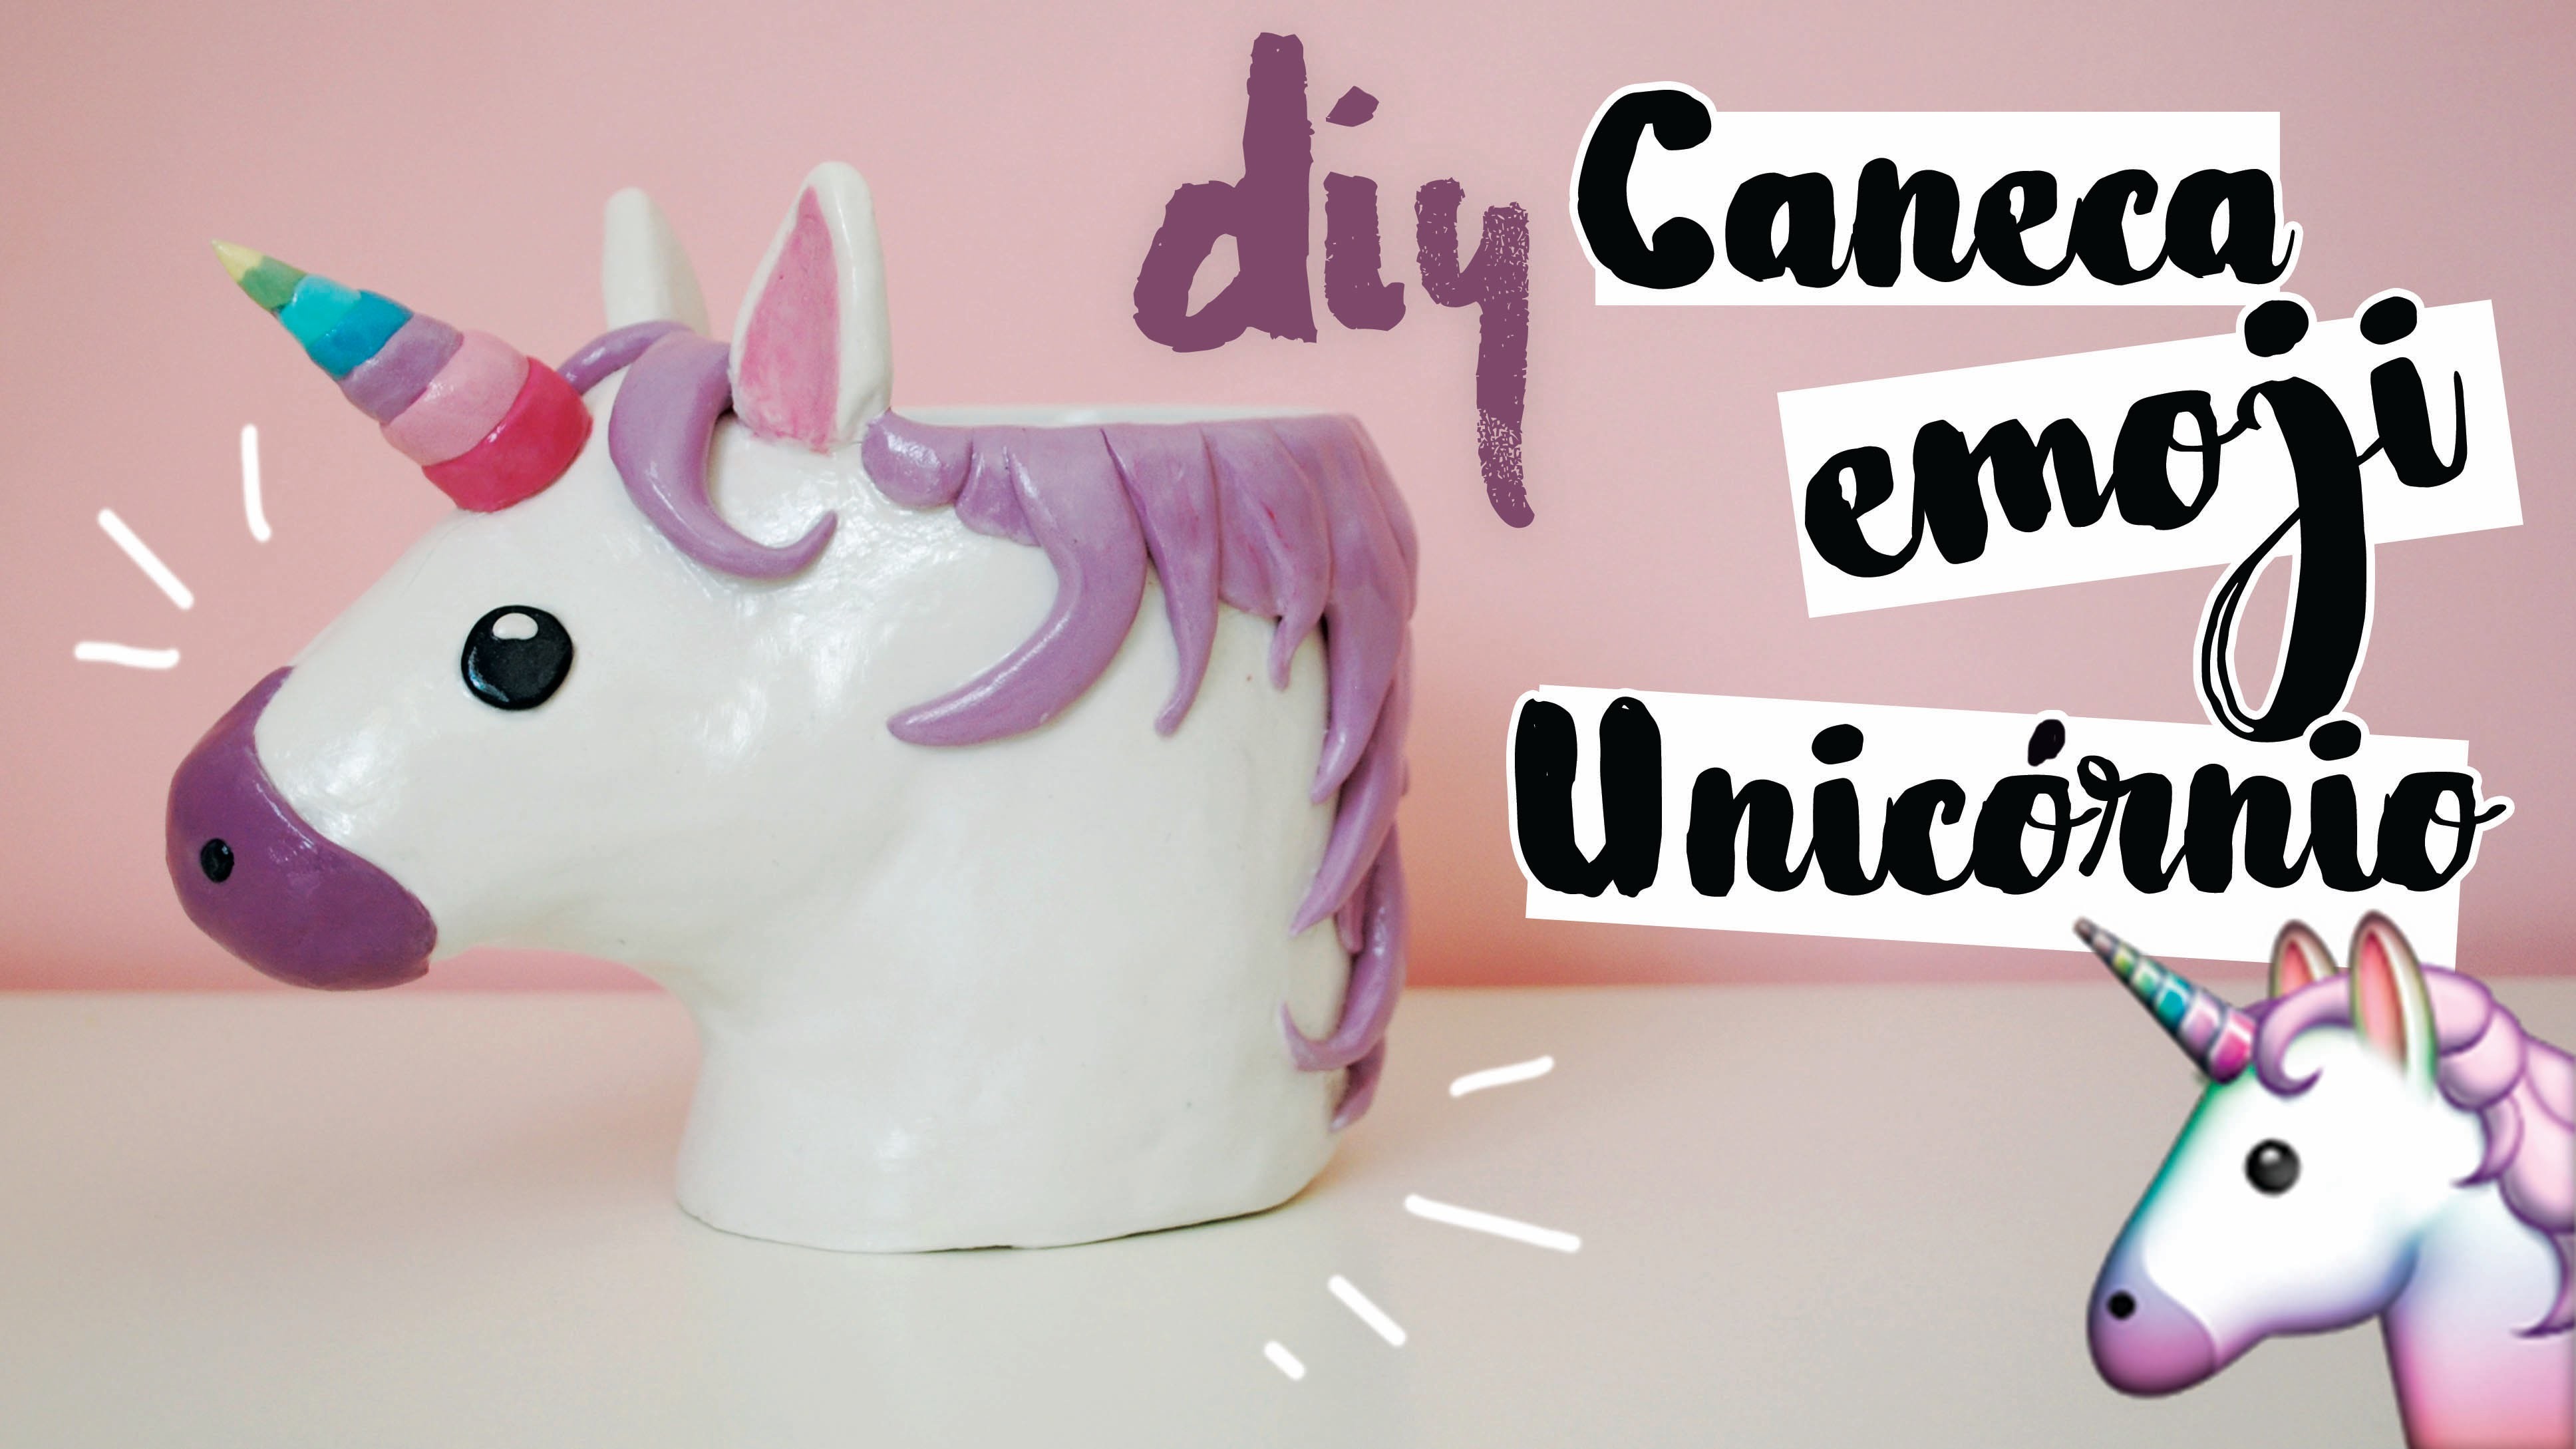 DIY: Caneca EMOJI de Unicórnio (Unicorn Emoji Mug)! por Isabelle Verona